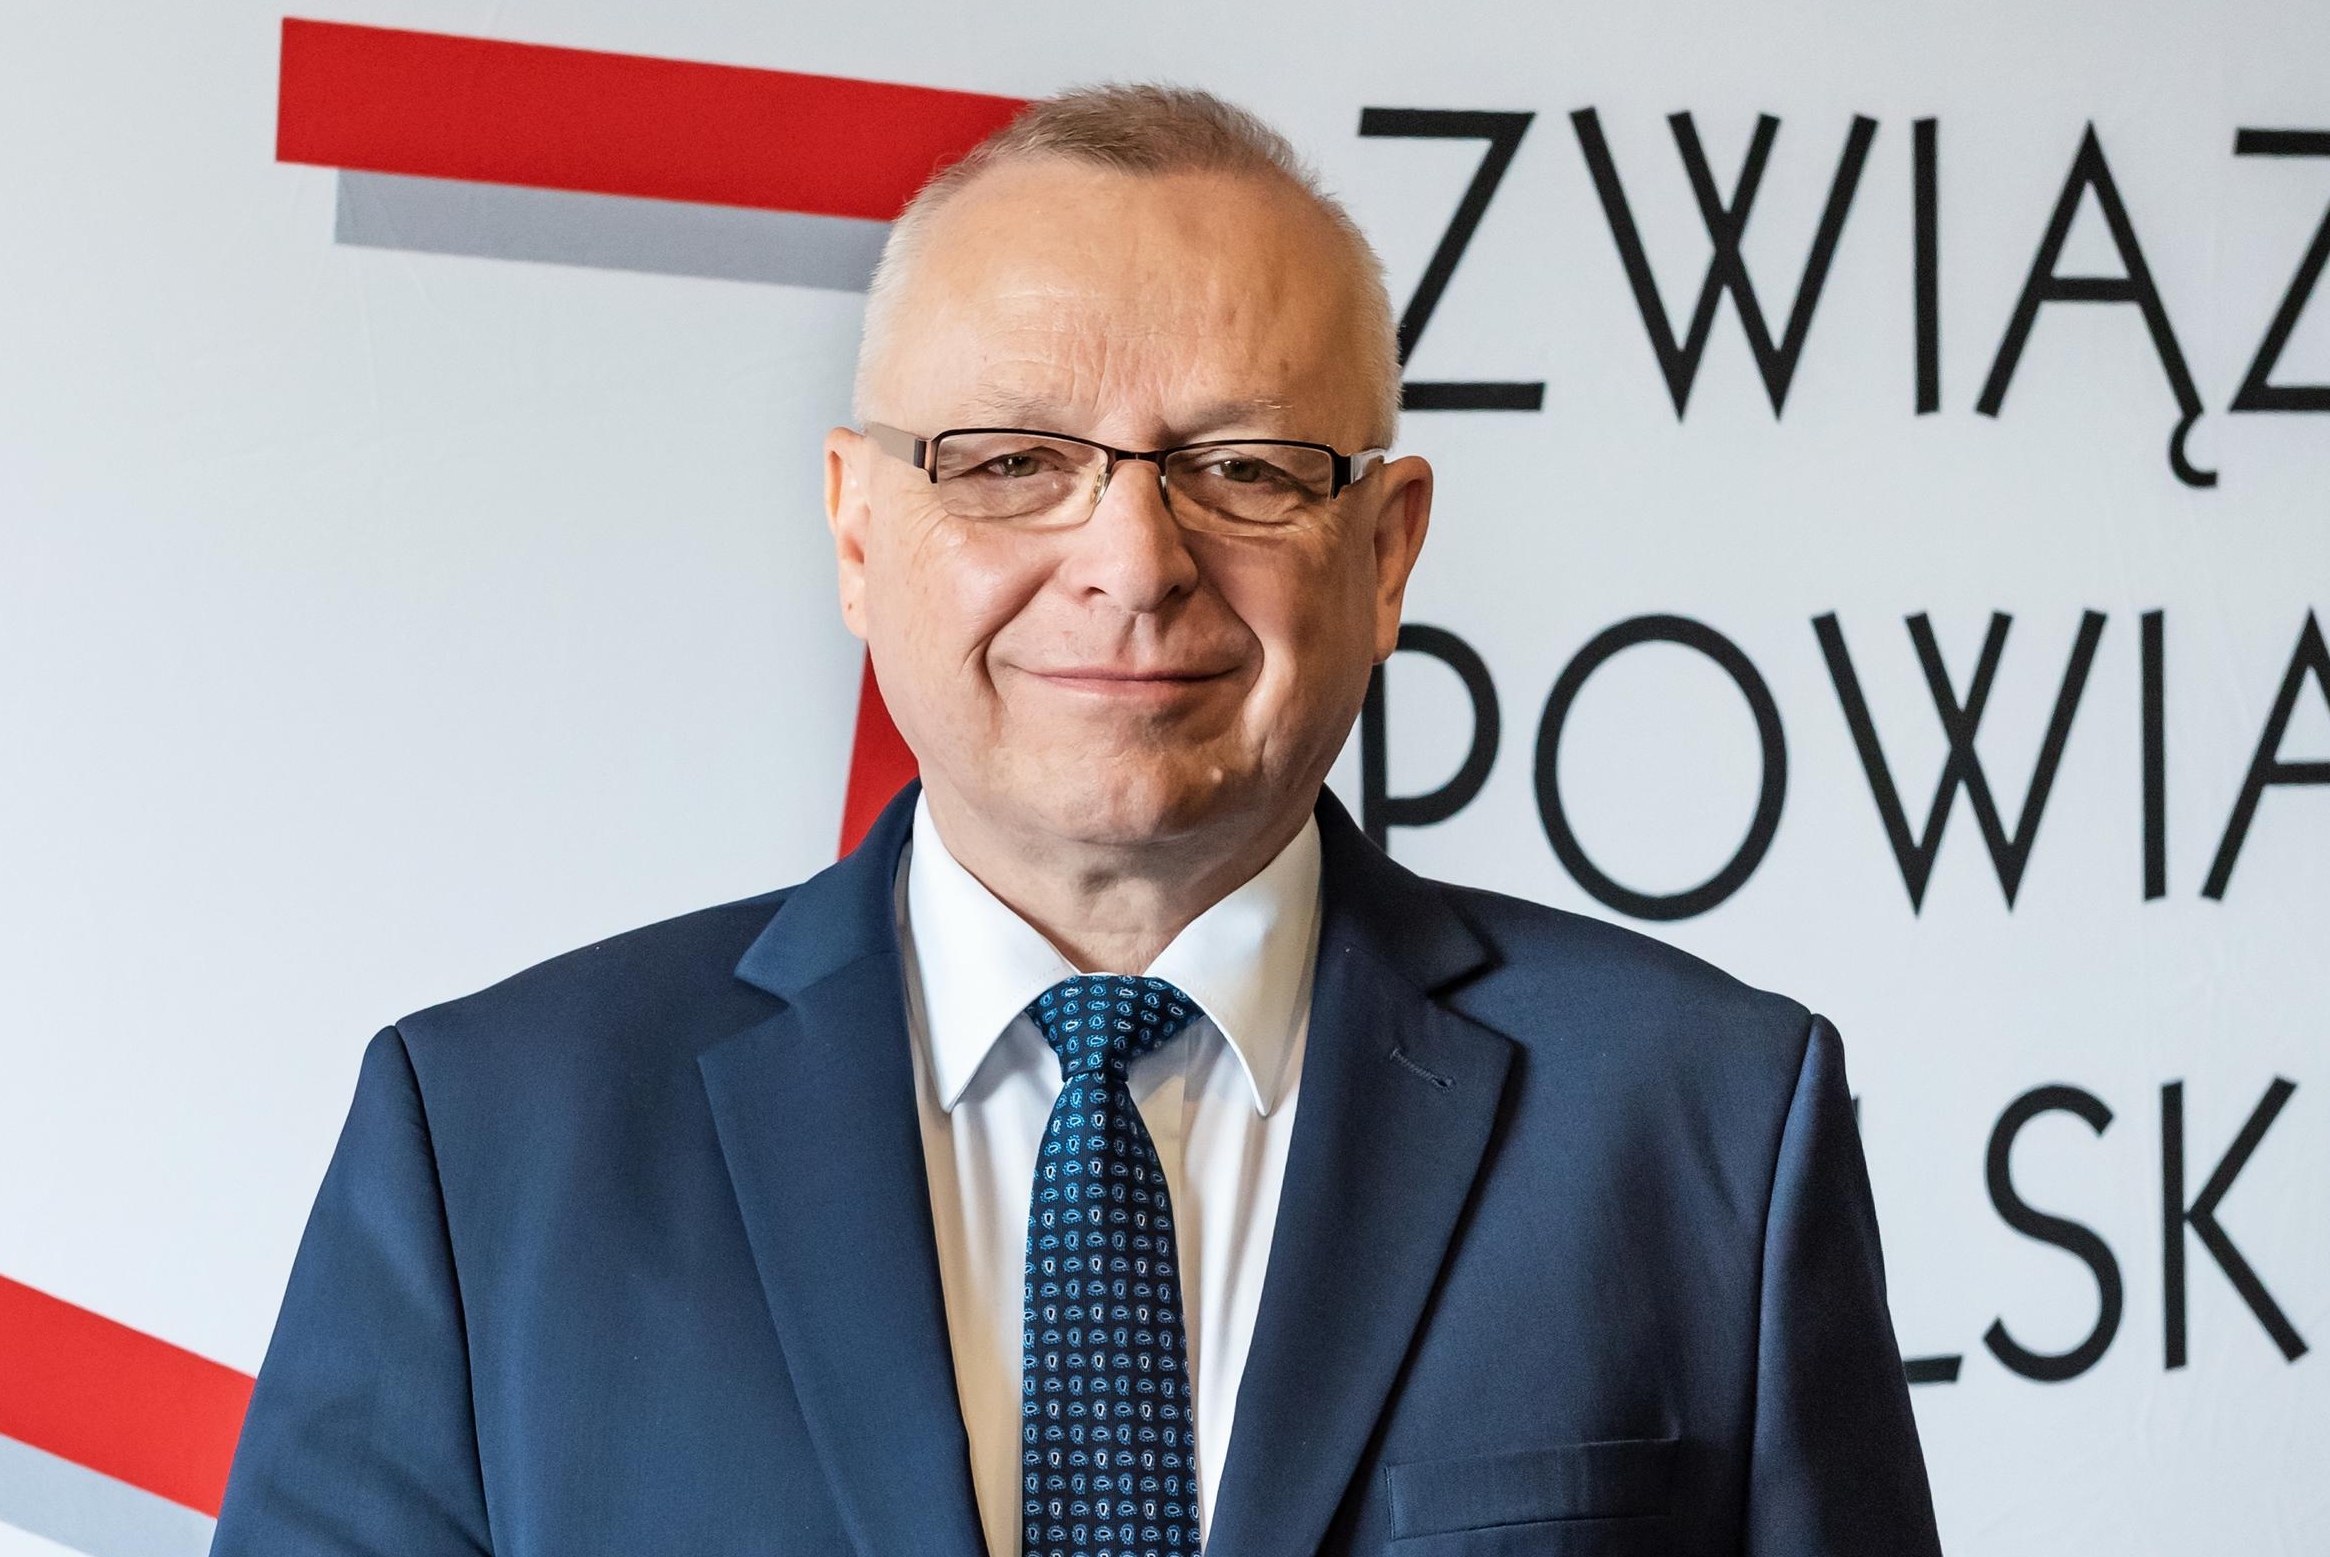 Pomysł likwidacji powiatów. Prezes ZPP Andrzej Płonka odpowiada